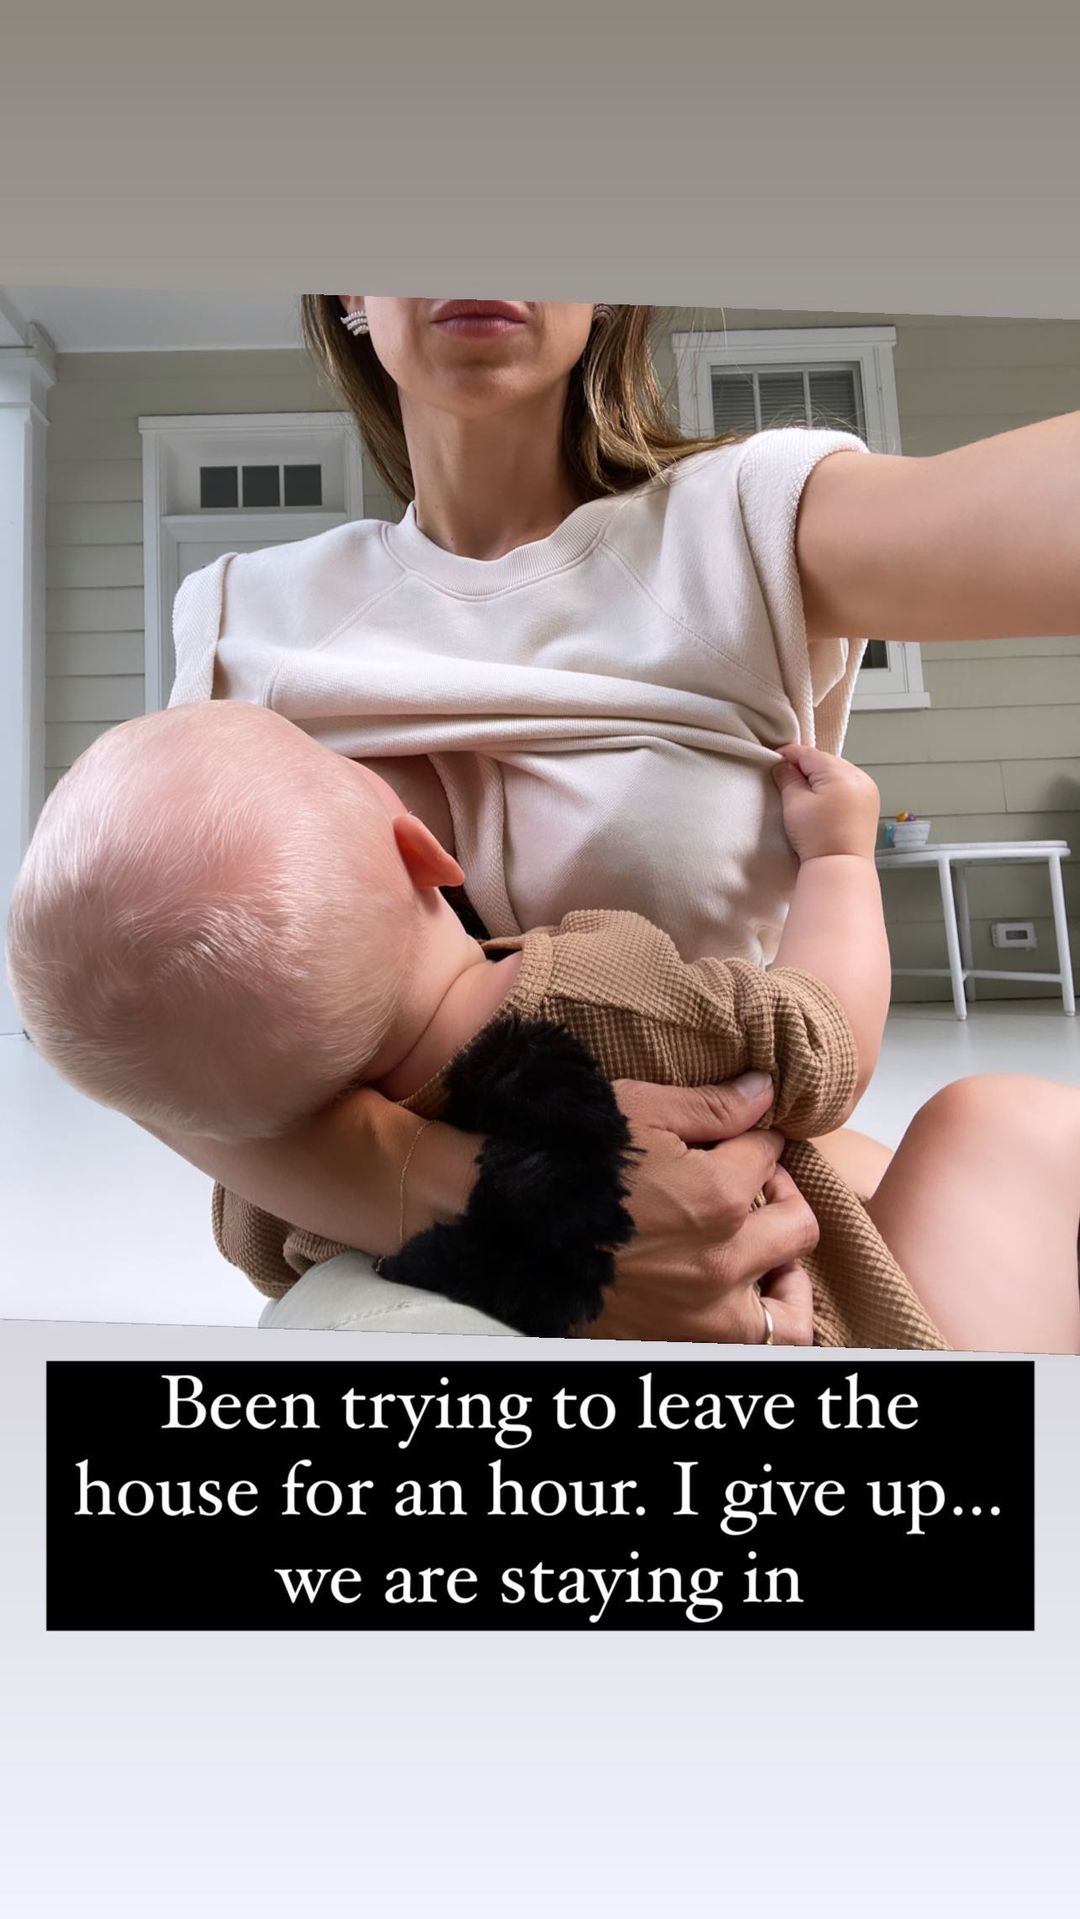 LOOK AT MY BOOBS! Oops I mean, breastfeeding : r/HilariaBaldwin